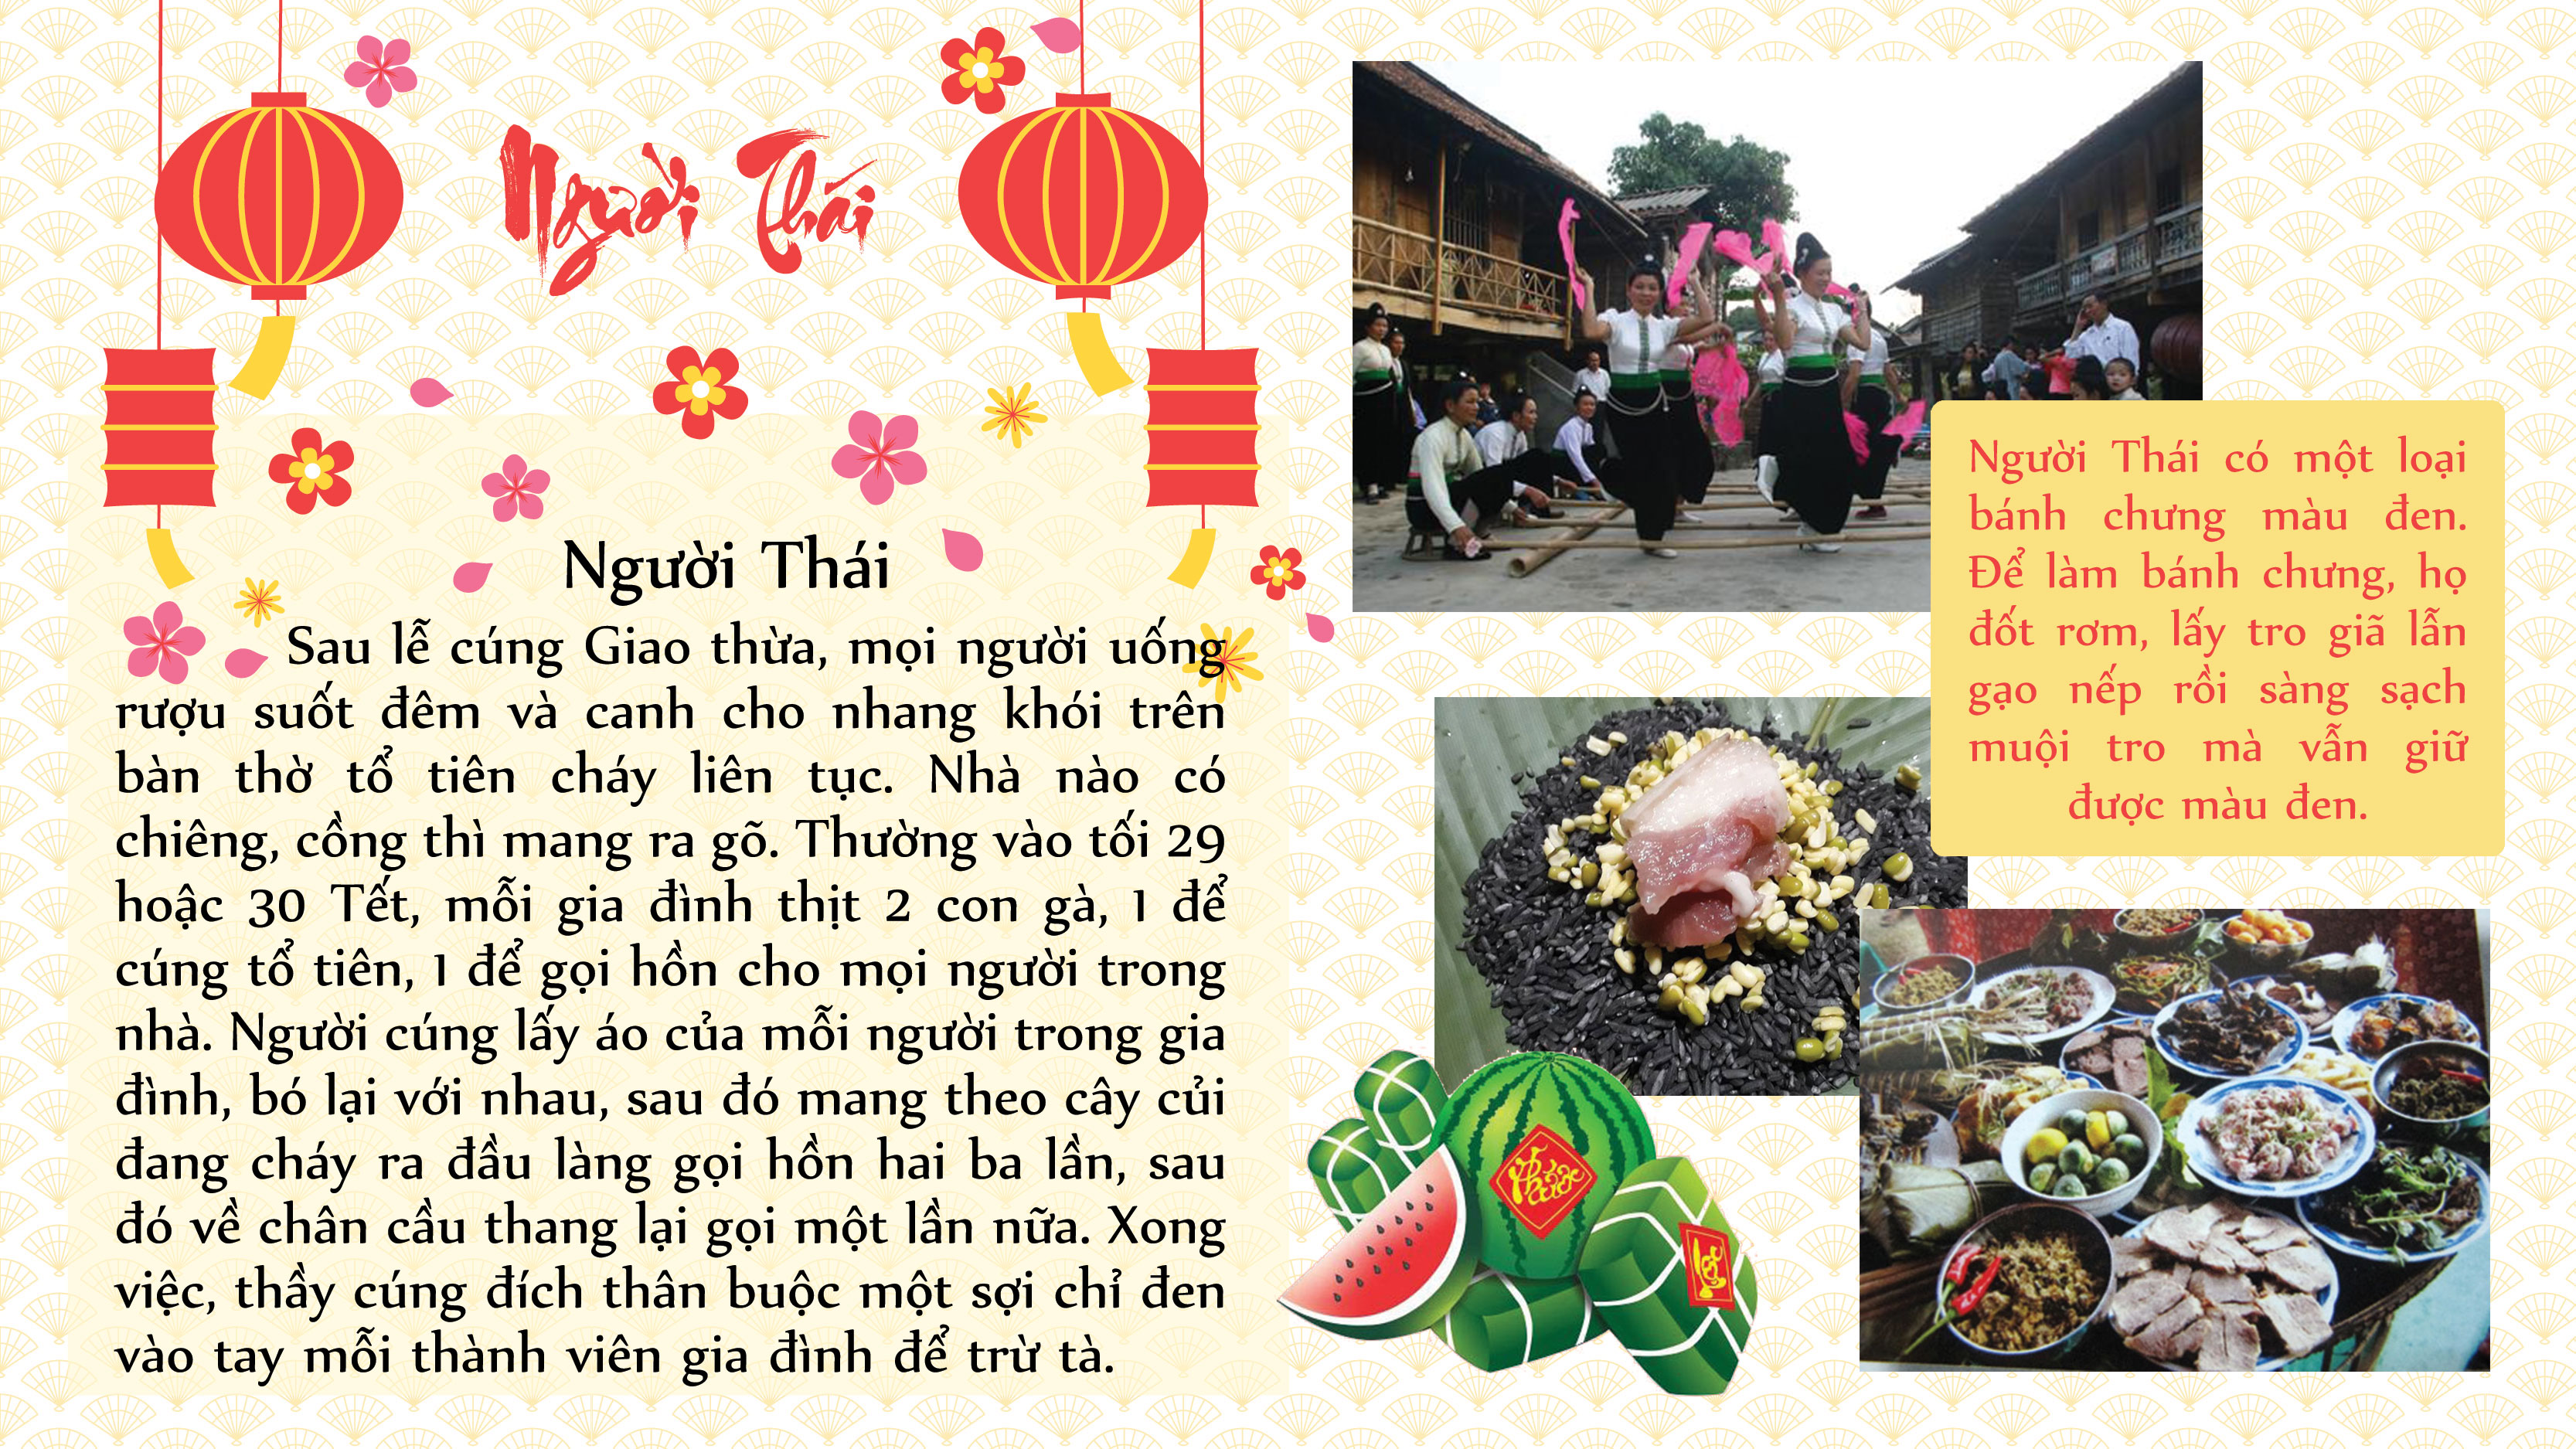 Phong tục lạ trong ngày Tết Nguyên đán của một số dân tộc Việt Nam - 3